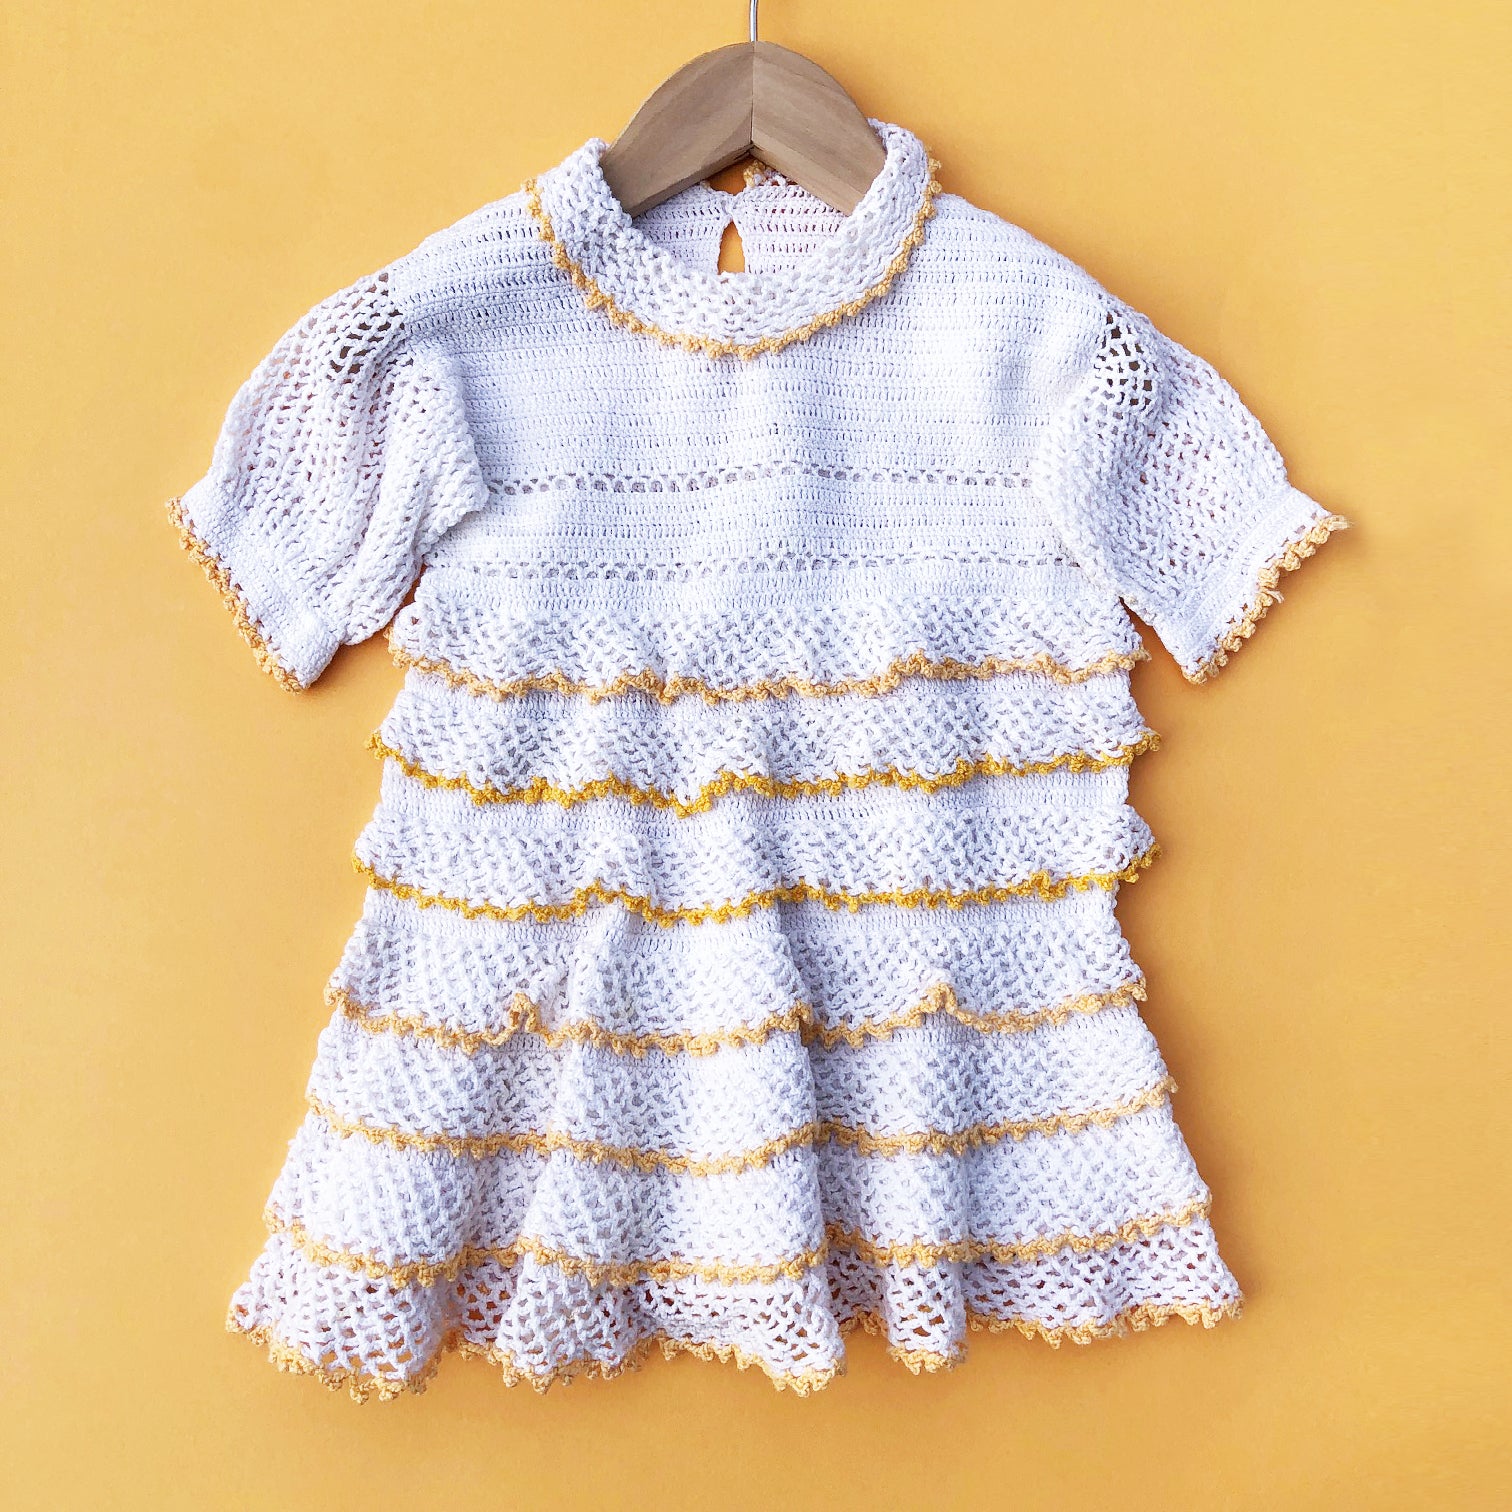 Hand Made Crochet baby dress 6-12 months